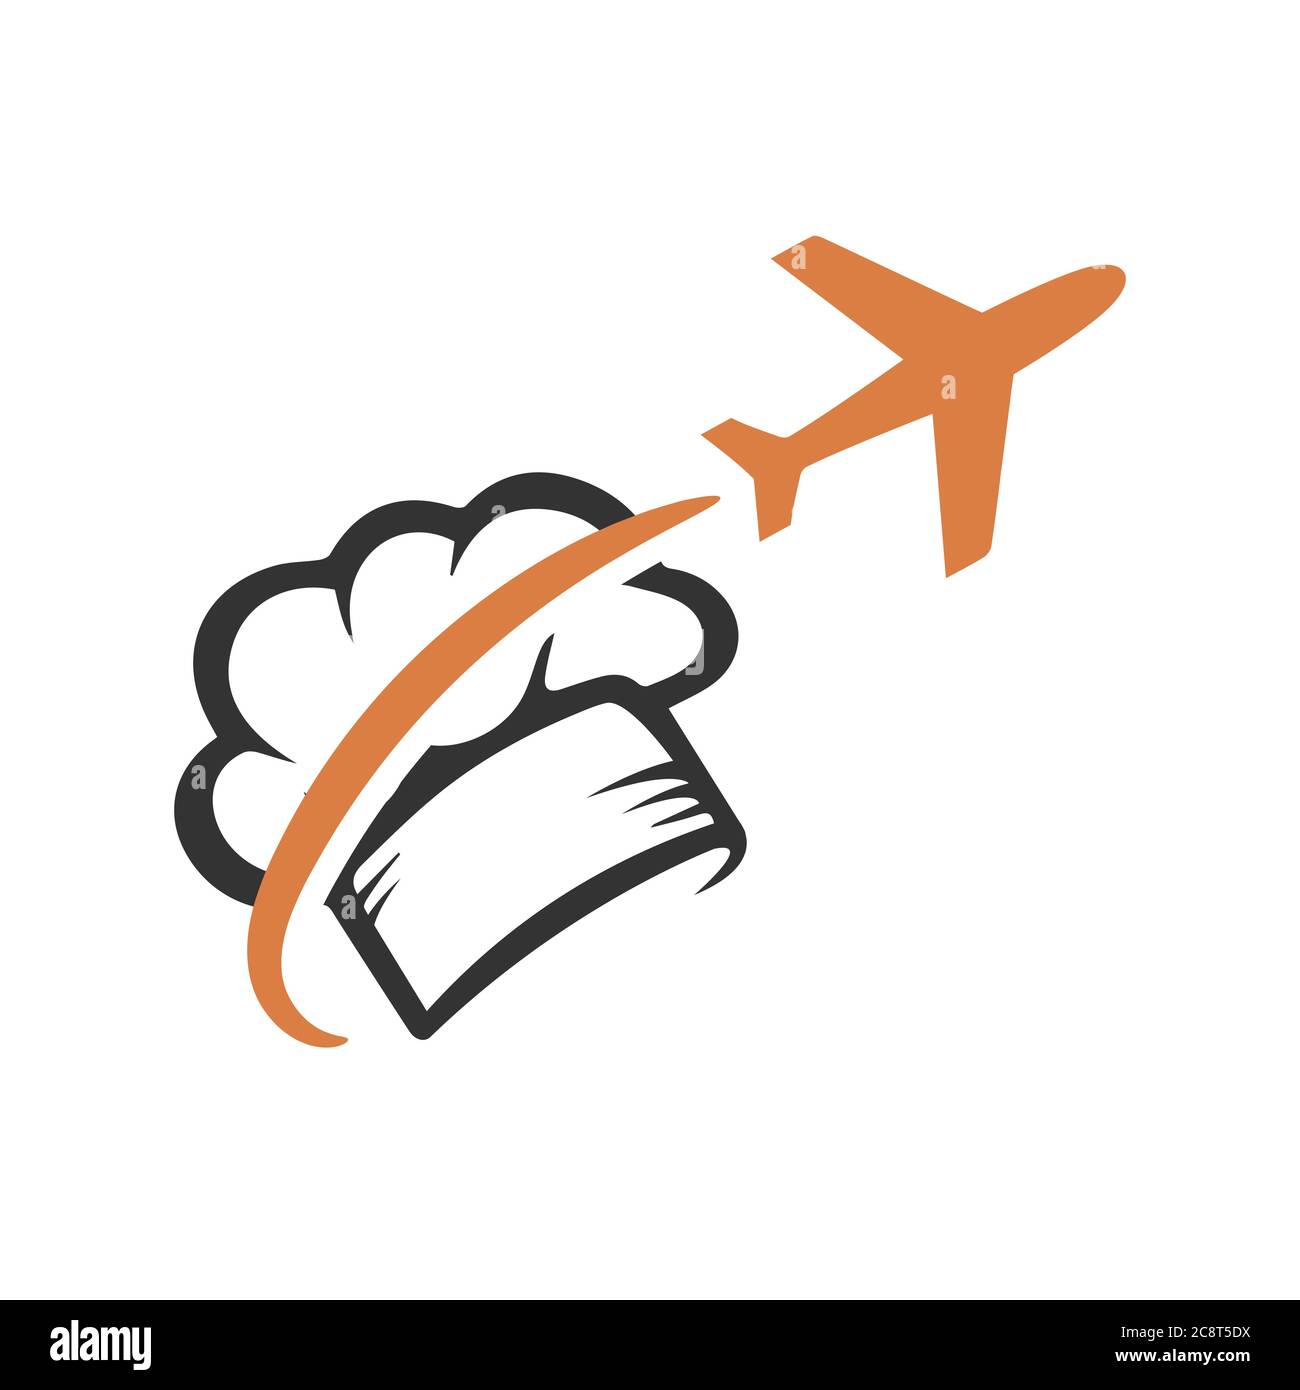 Immagini combinate di simbolo di trasporto e icona utensili da cucina per il blogging alimentare vlogging viaggio logo disegno vettore stock illustrazione Illustrazione Vettoriale